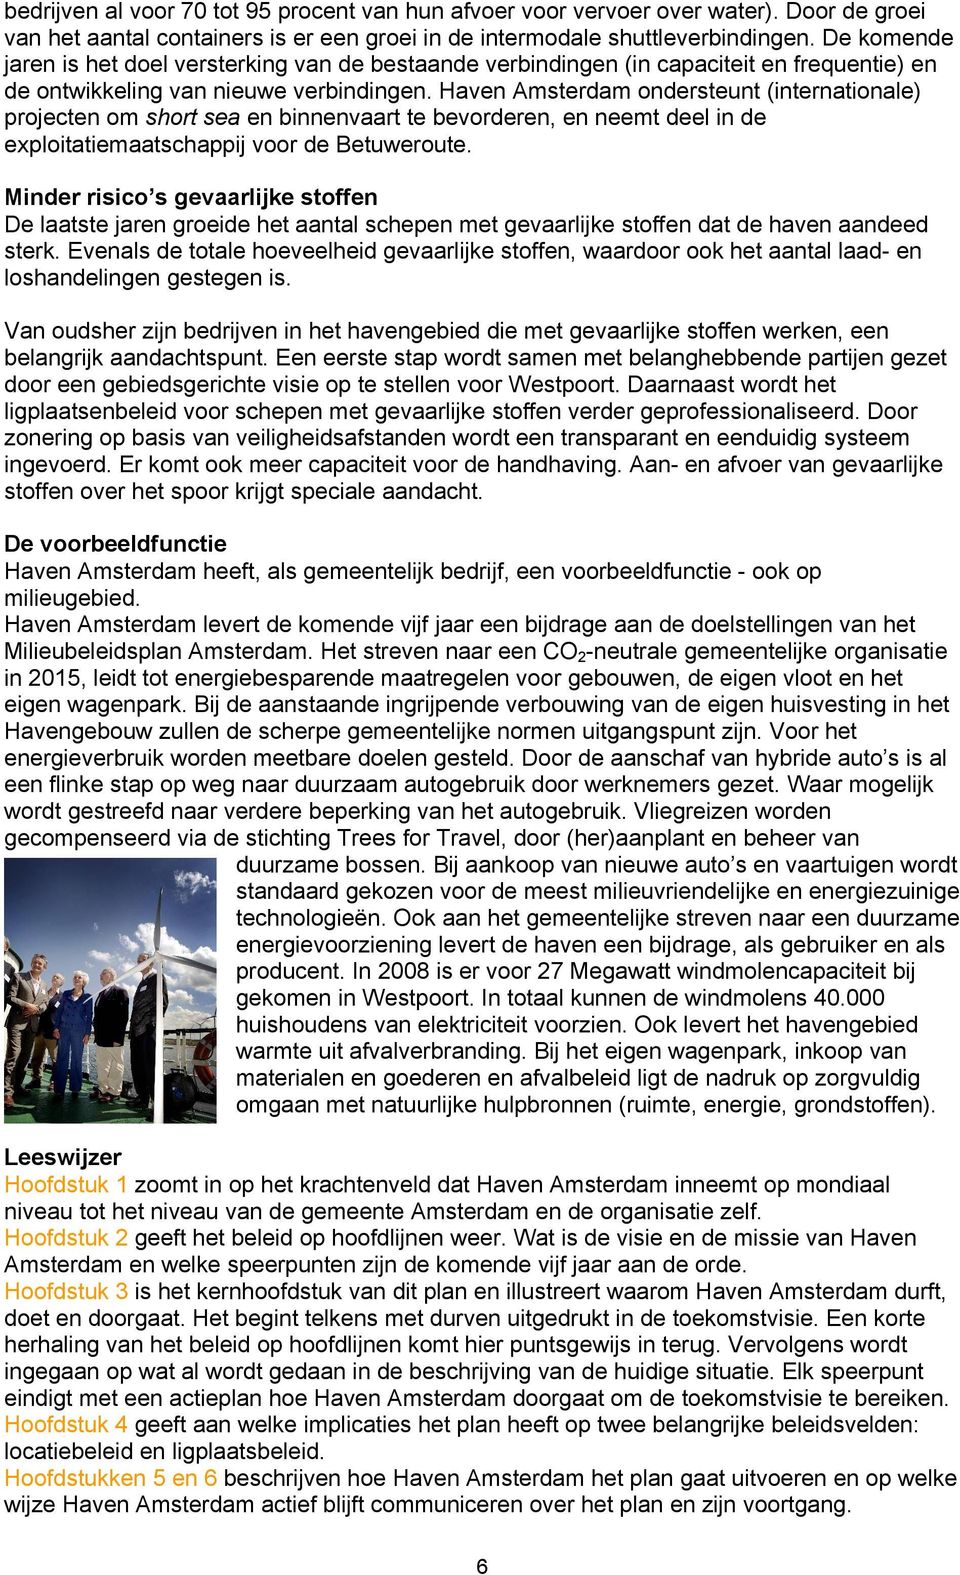 Haven Amsterdam ondersteunt (internationale) projecten om short sea en binnenvaart te bevorderen, en neemt deel in de exploitatiemaatschappij voor de Betuweroute.